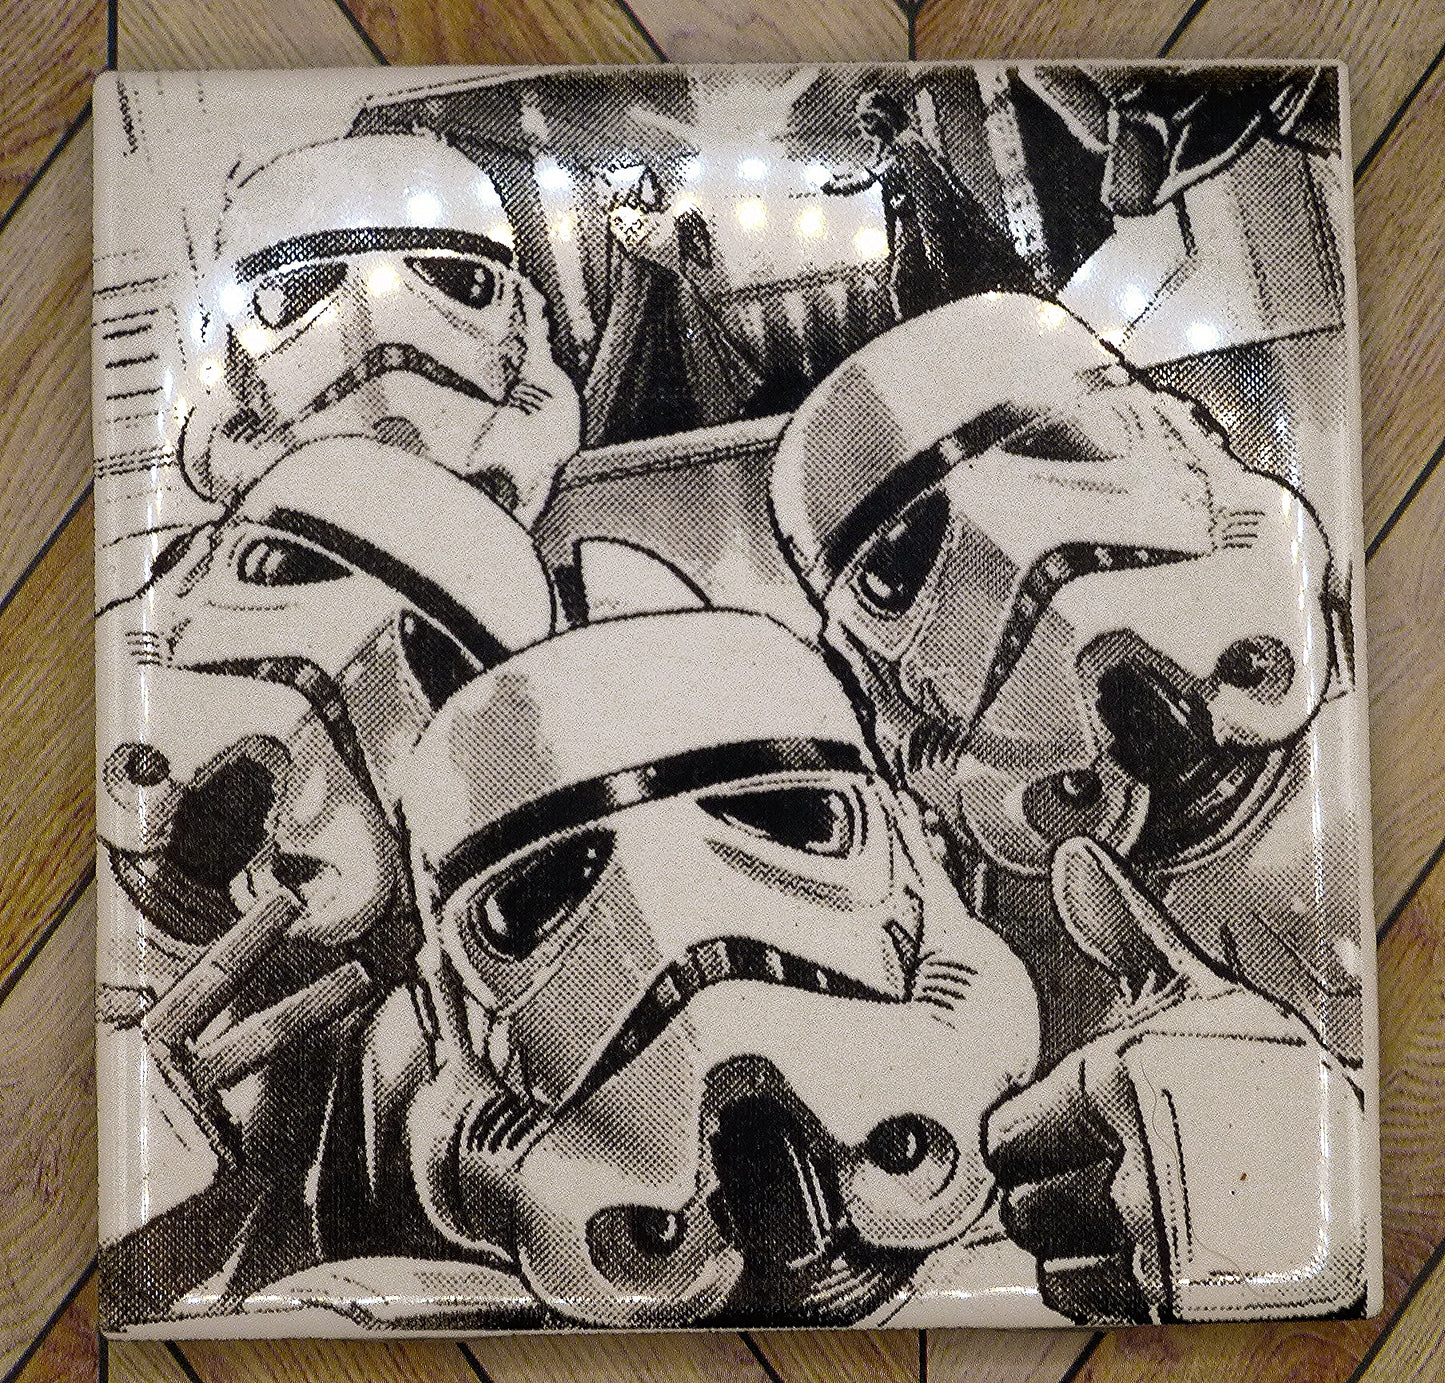 Stormtrooper Selfie Coasters